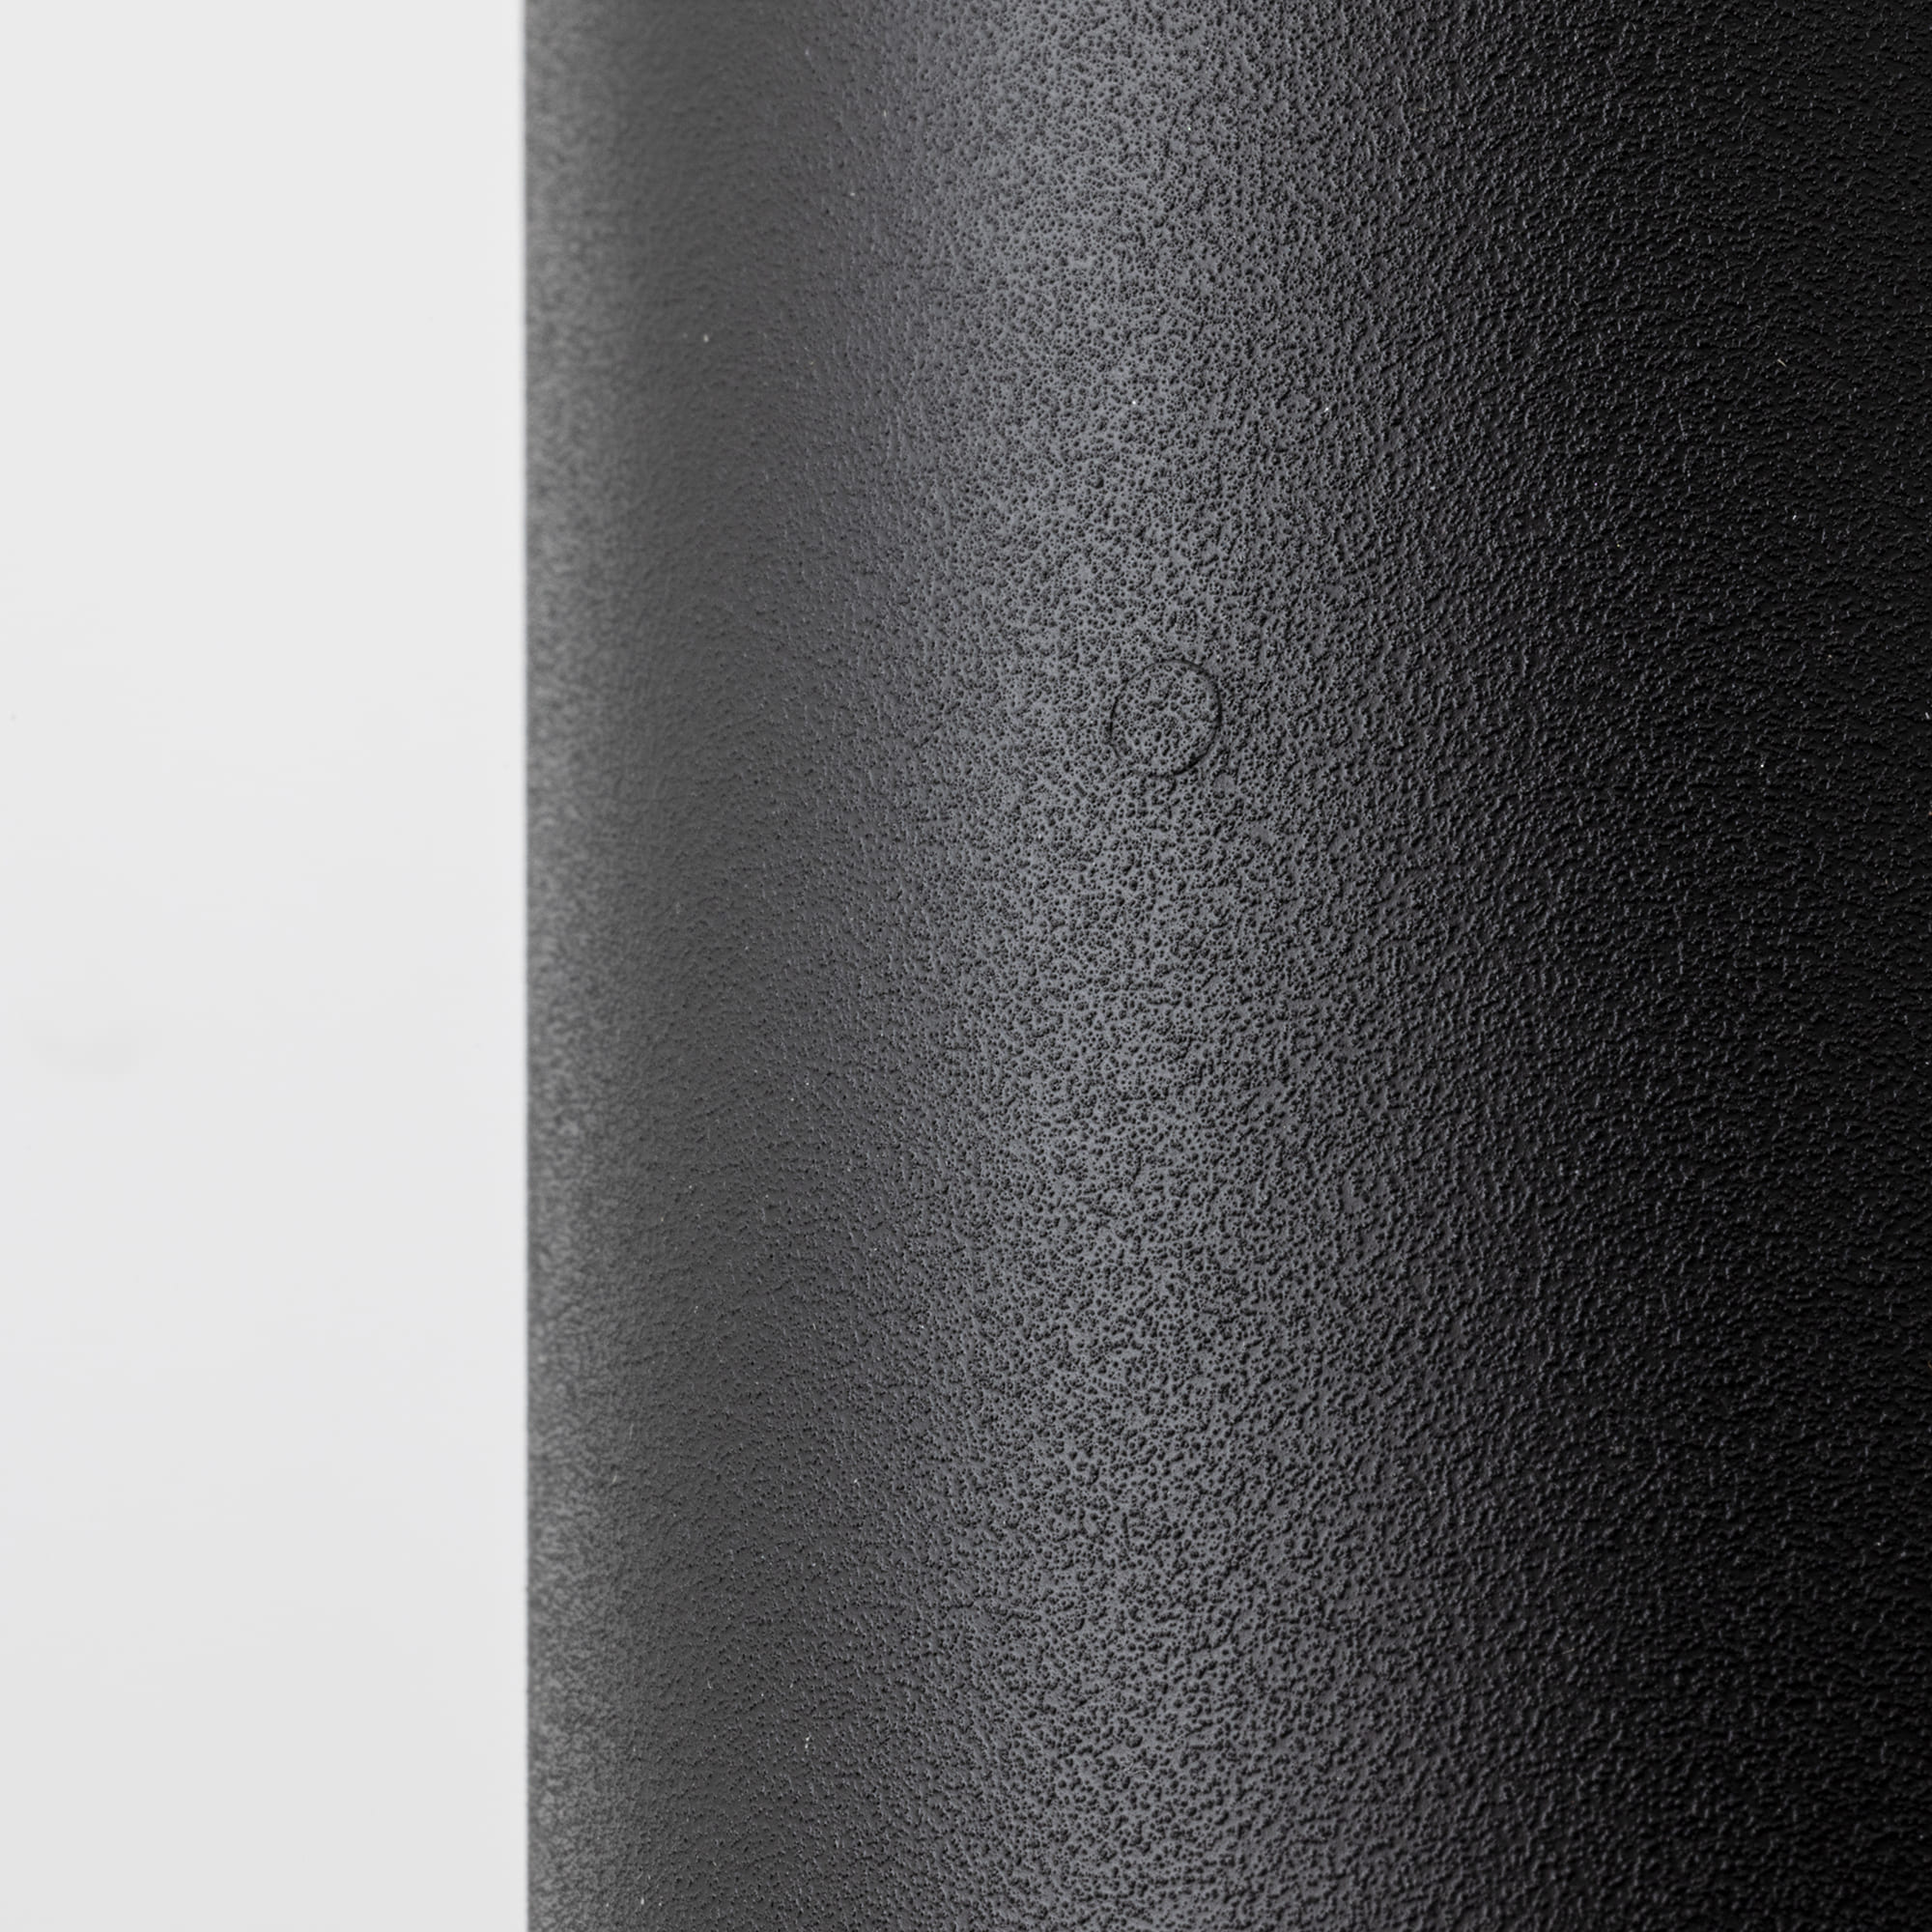 シーリングスポット ブラック LT-BR017-01-G141 ブラックはざらっとした塗装仕上げ。外側に突起の位置がわかるよう、さりげない目印がついています